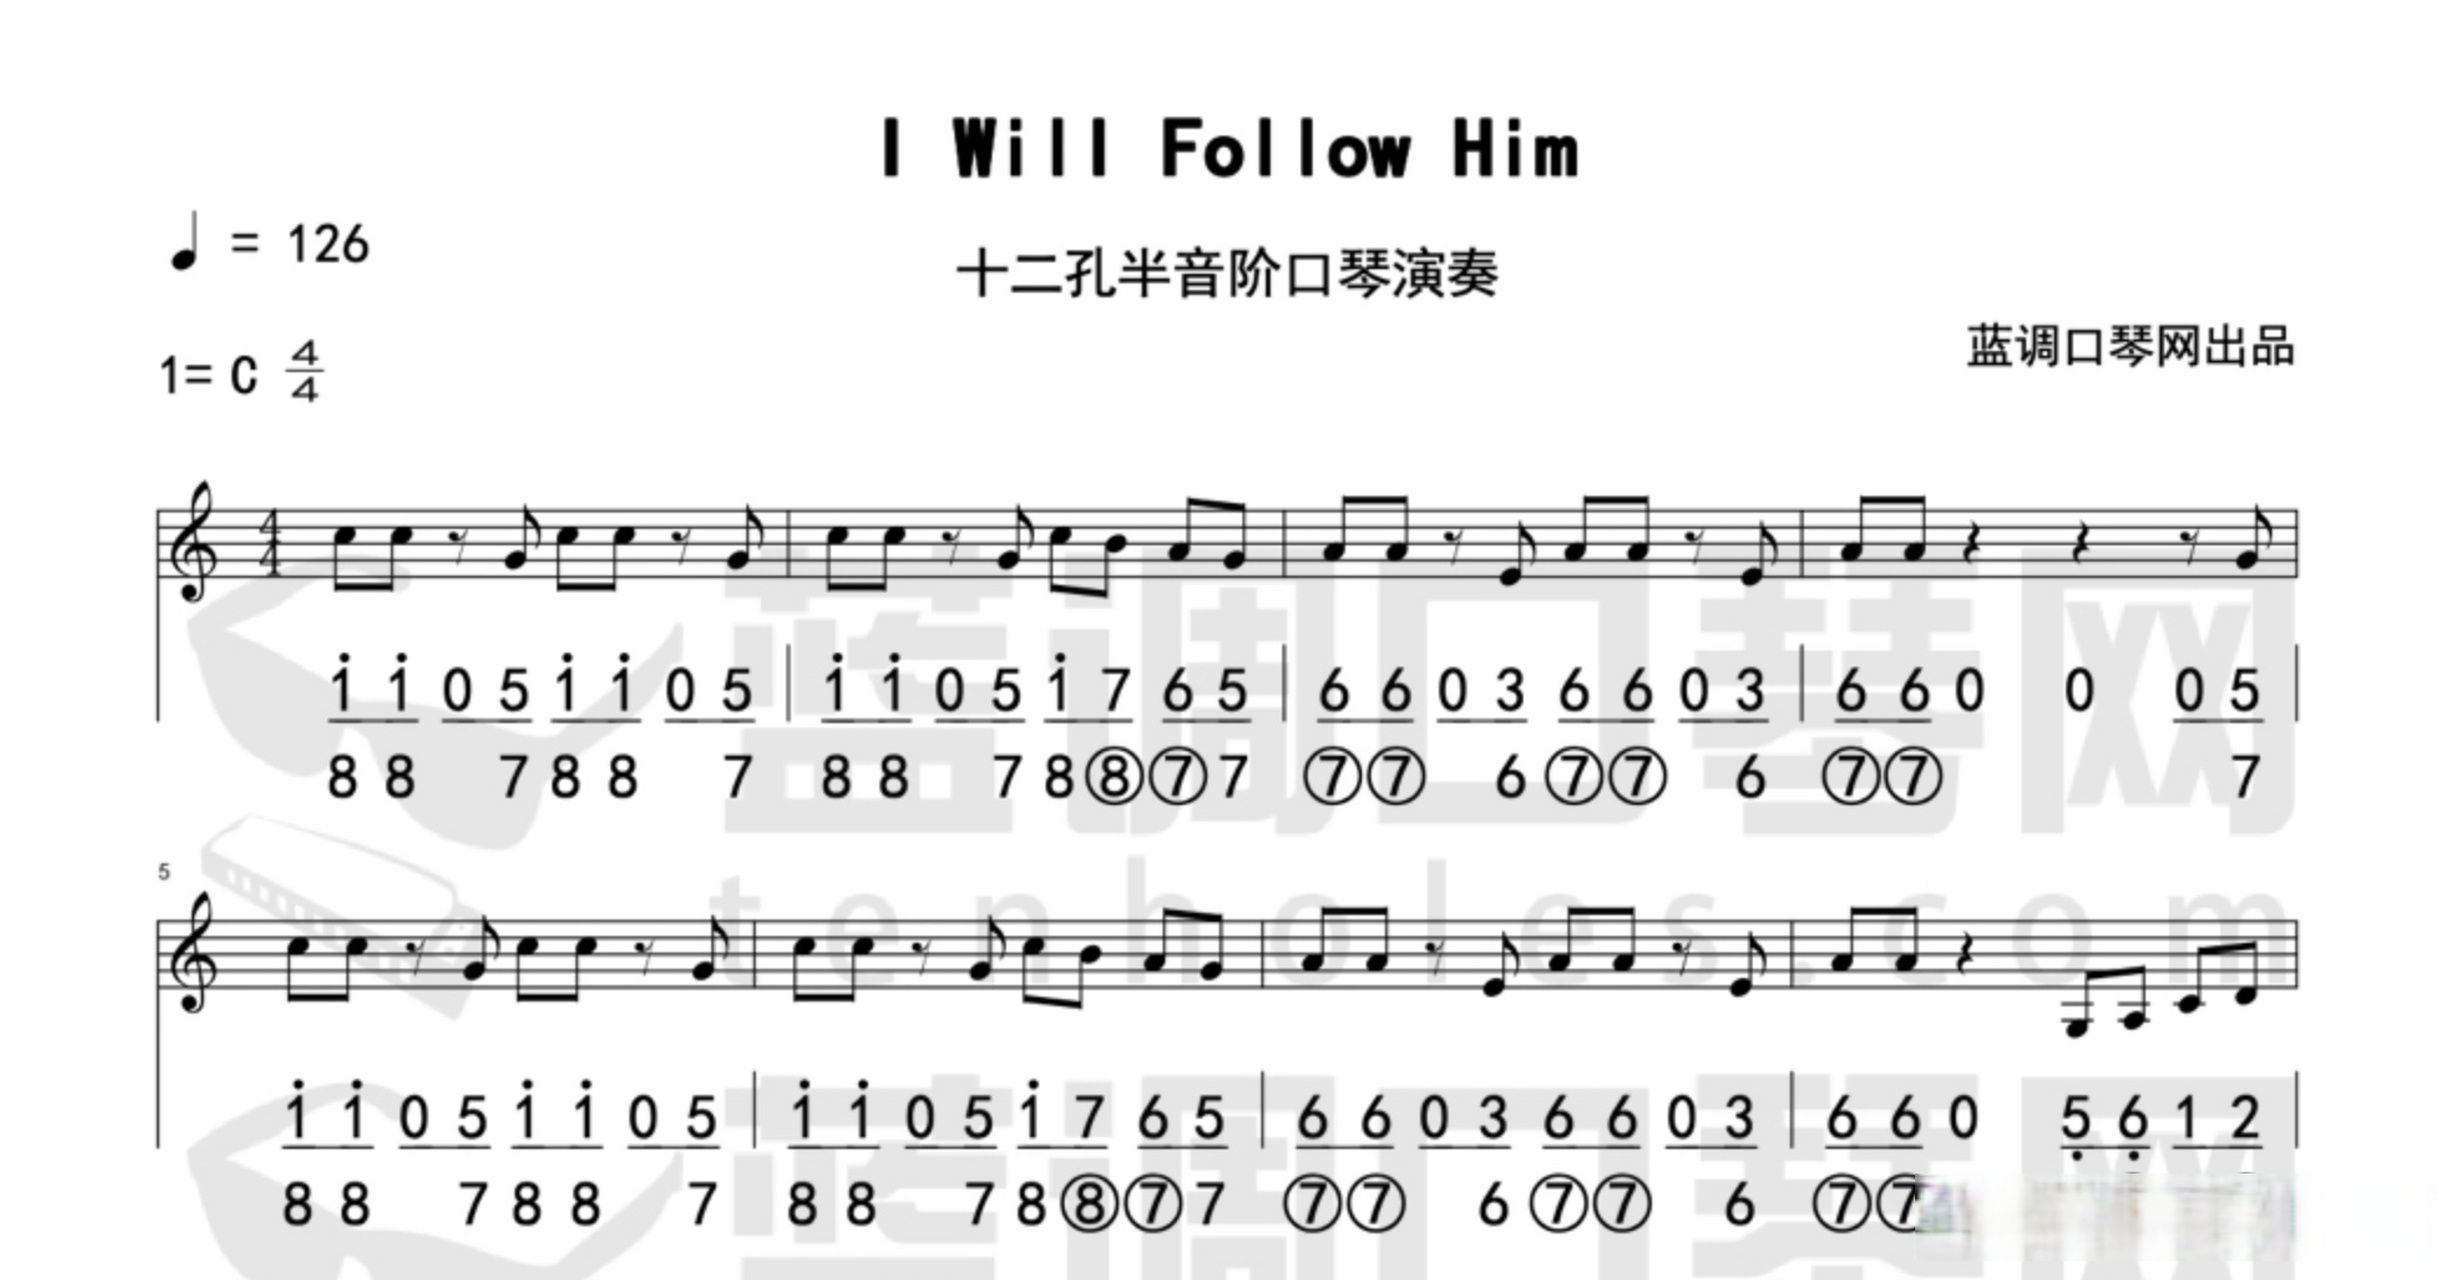 【曲谱更新】蓝调口琴演奏《花海》半音阶口琴演奏《i will follow